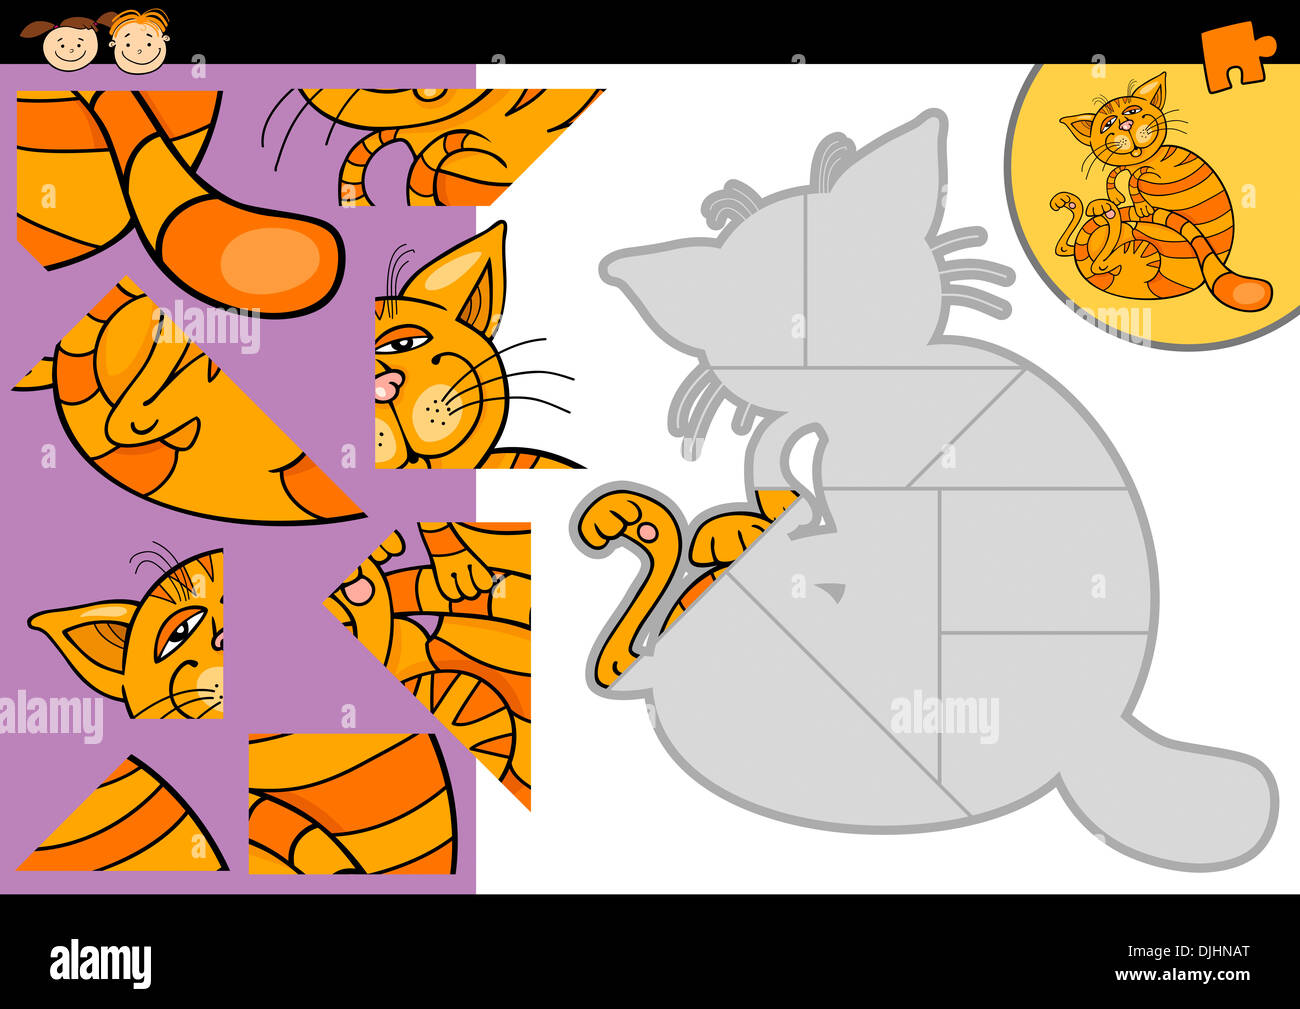 Ilustración de dibujos animados de educación juego rompecabezas para niños de edad preescolar con gato Animal Fotografía de stock Alamy